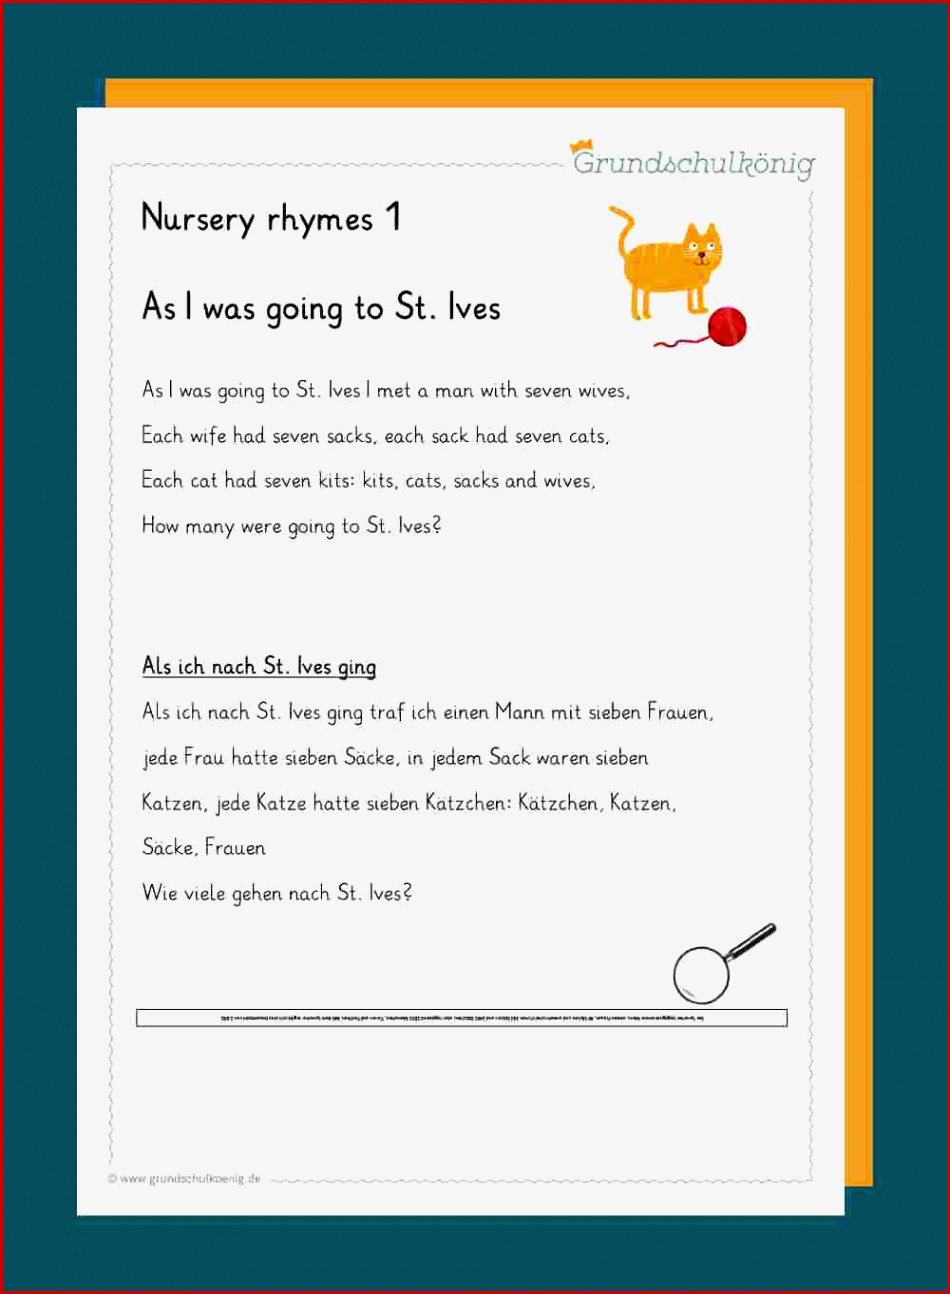 Nursery Rhymes Englische Kinderreime